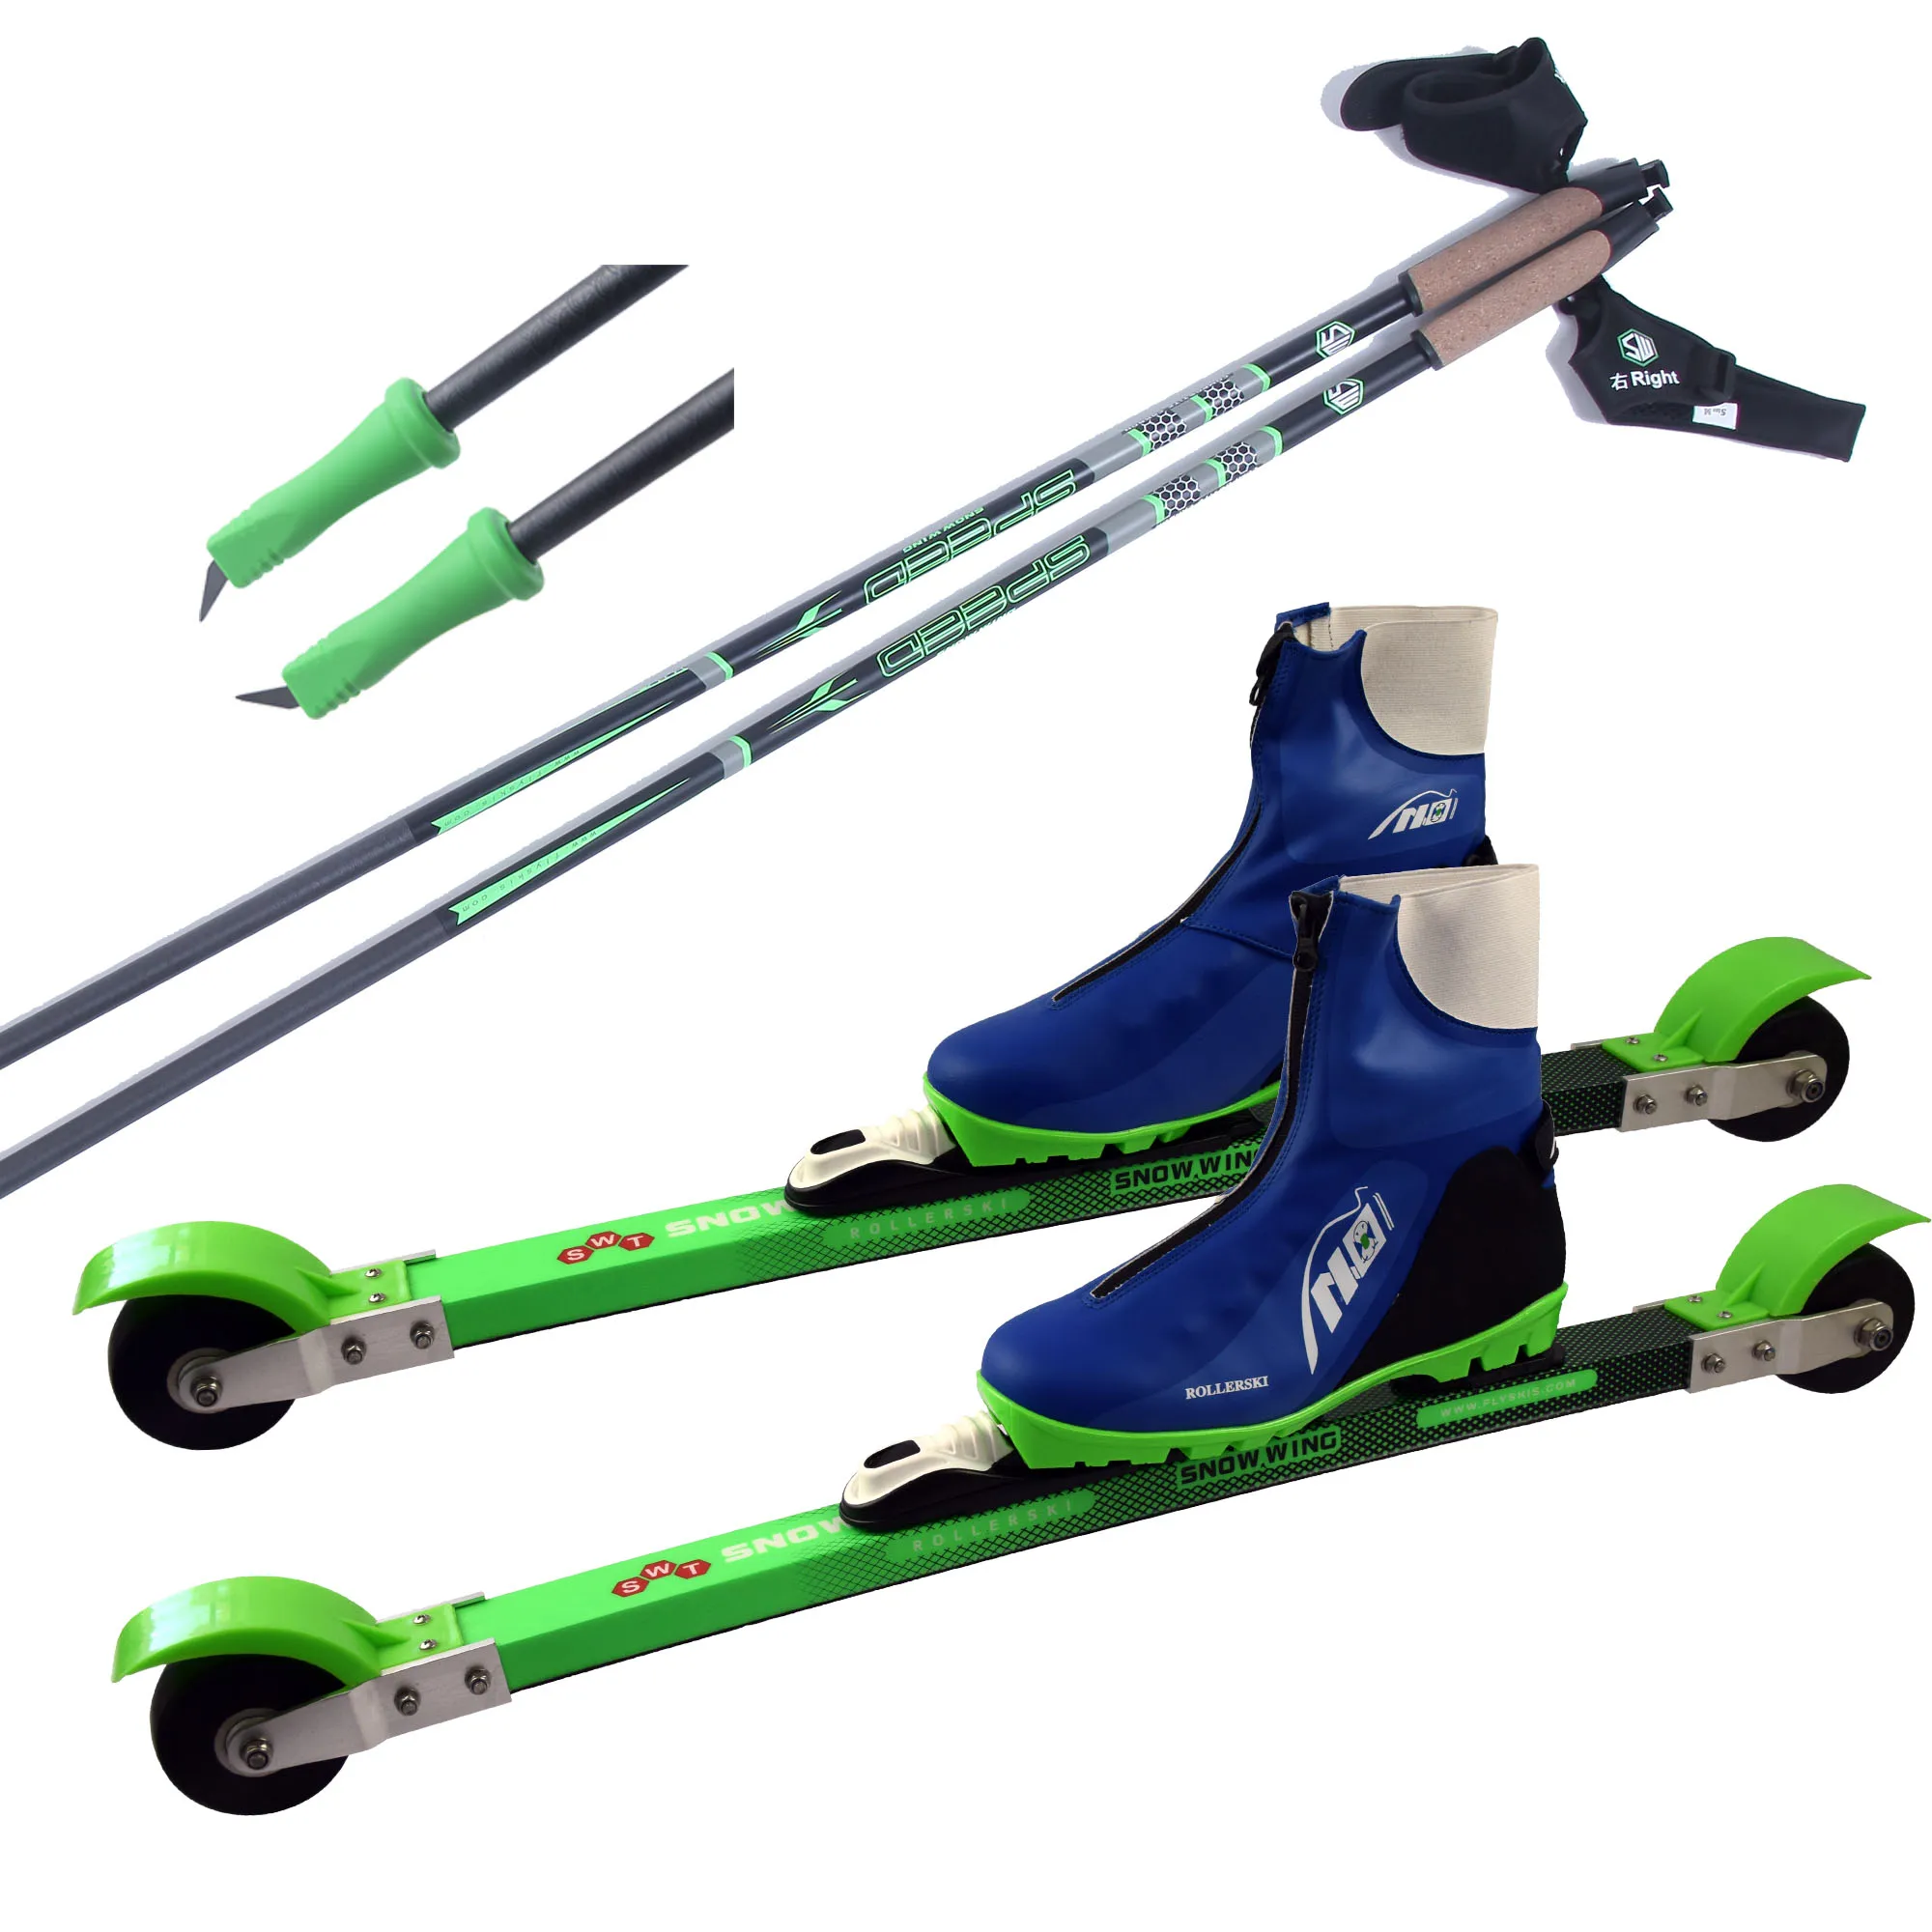 Best Sale Carbon Fiber Rollerski Skate And Classic Roller Ski - Carbon Fiber Rollerski,Skate Roller Ski,Classic Roller Ski Product on Alibaba.com